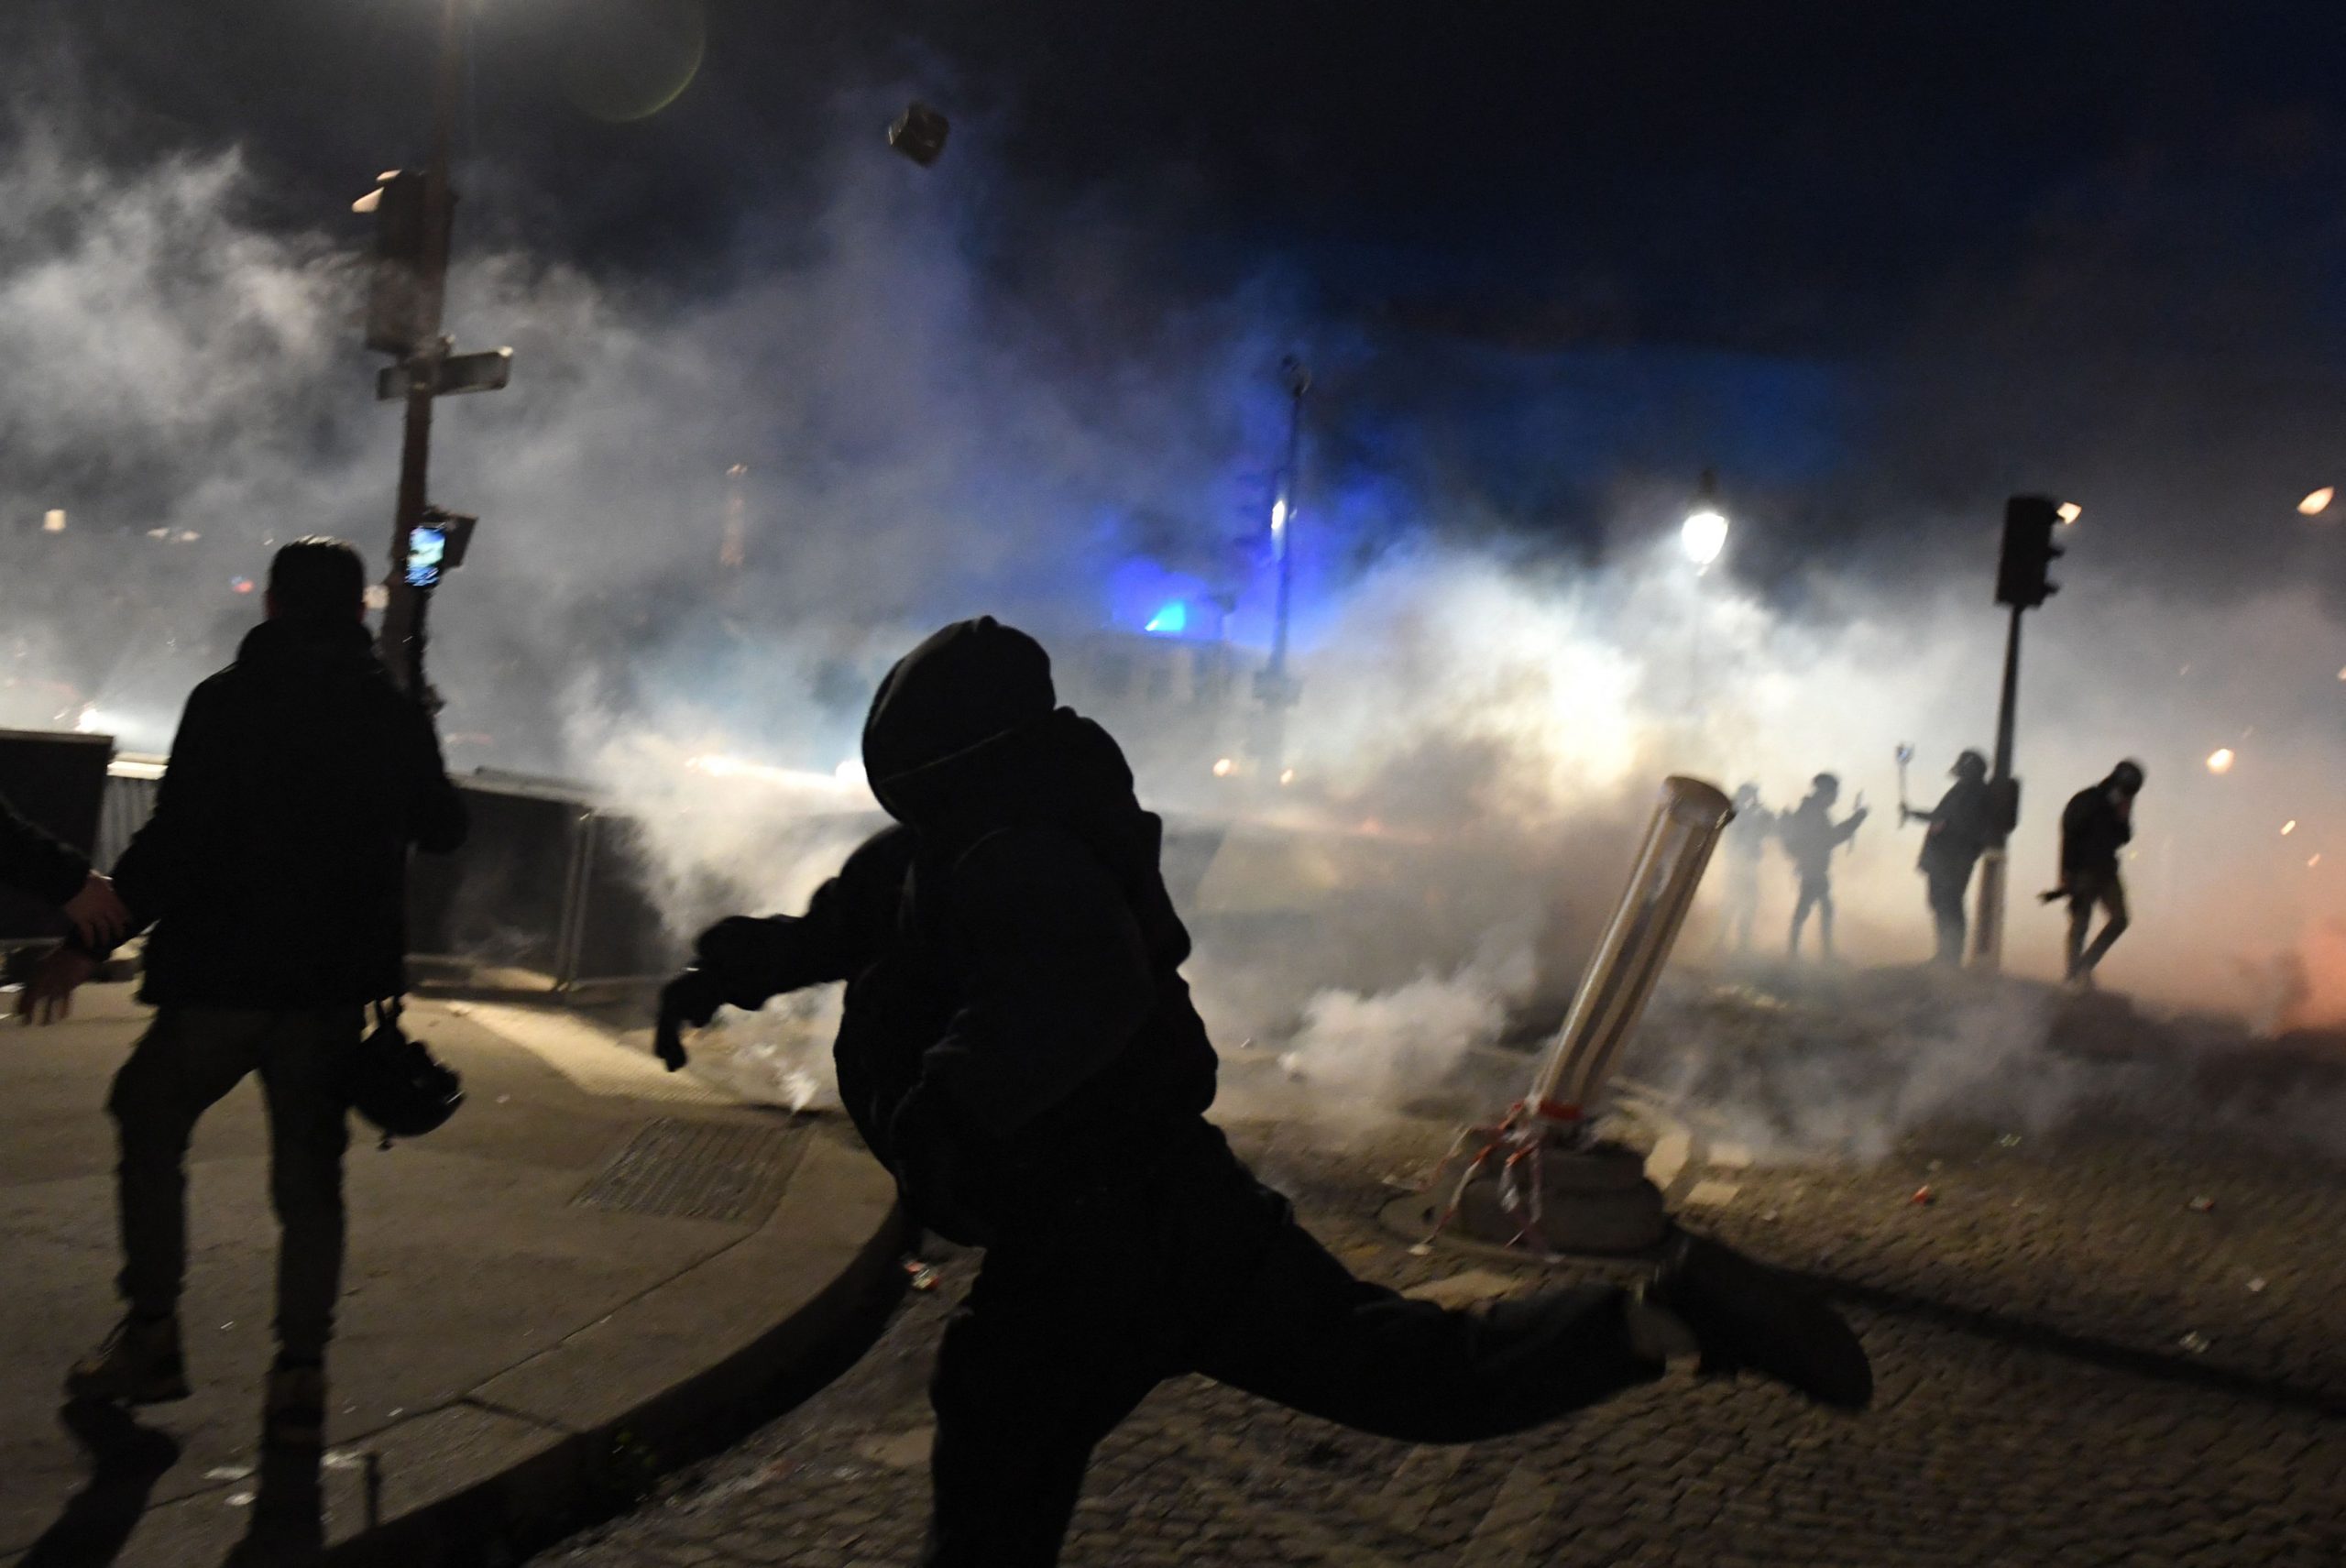 7000人抗议法国退休改革法案 警方施放催泪弹